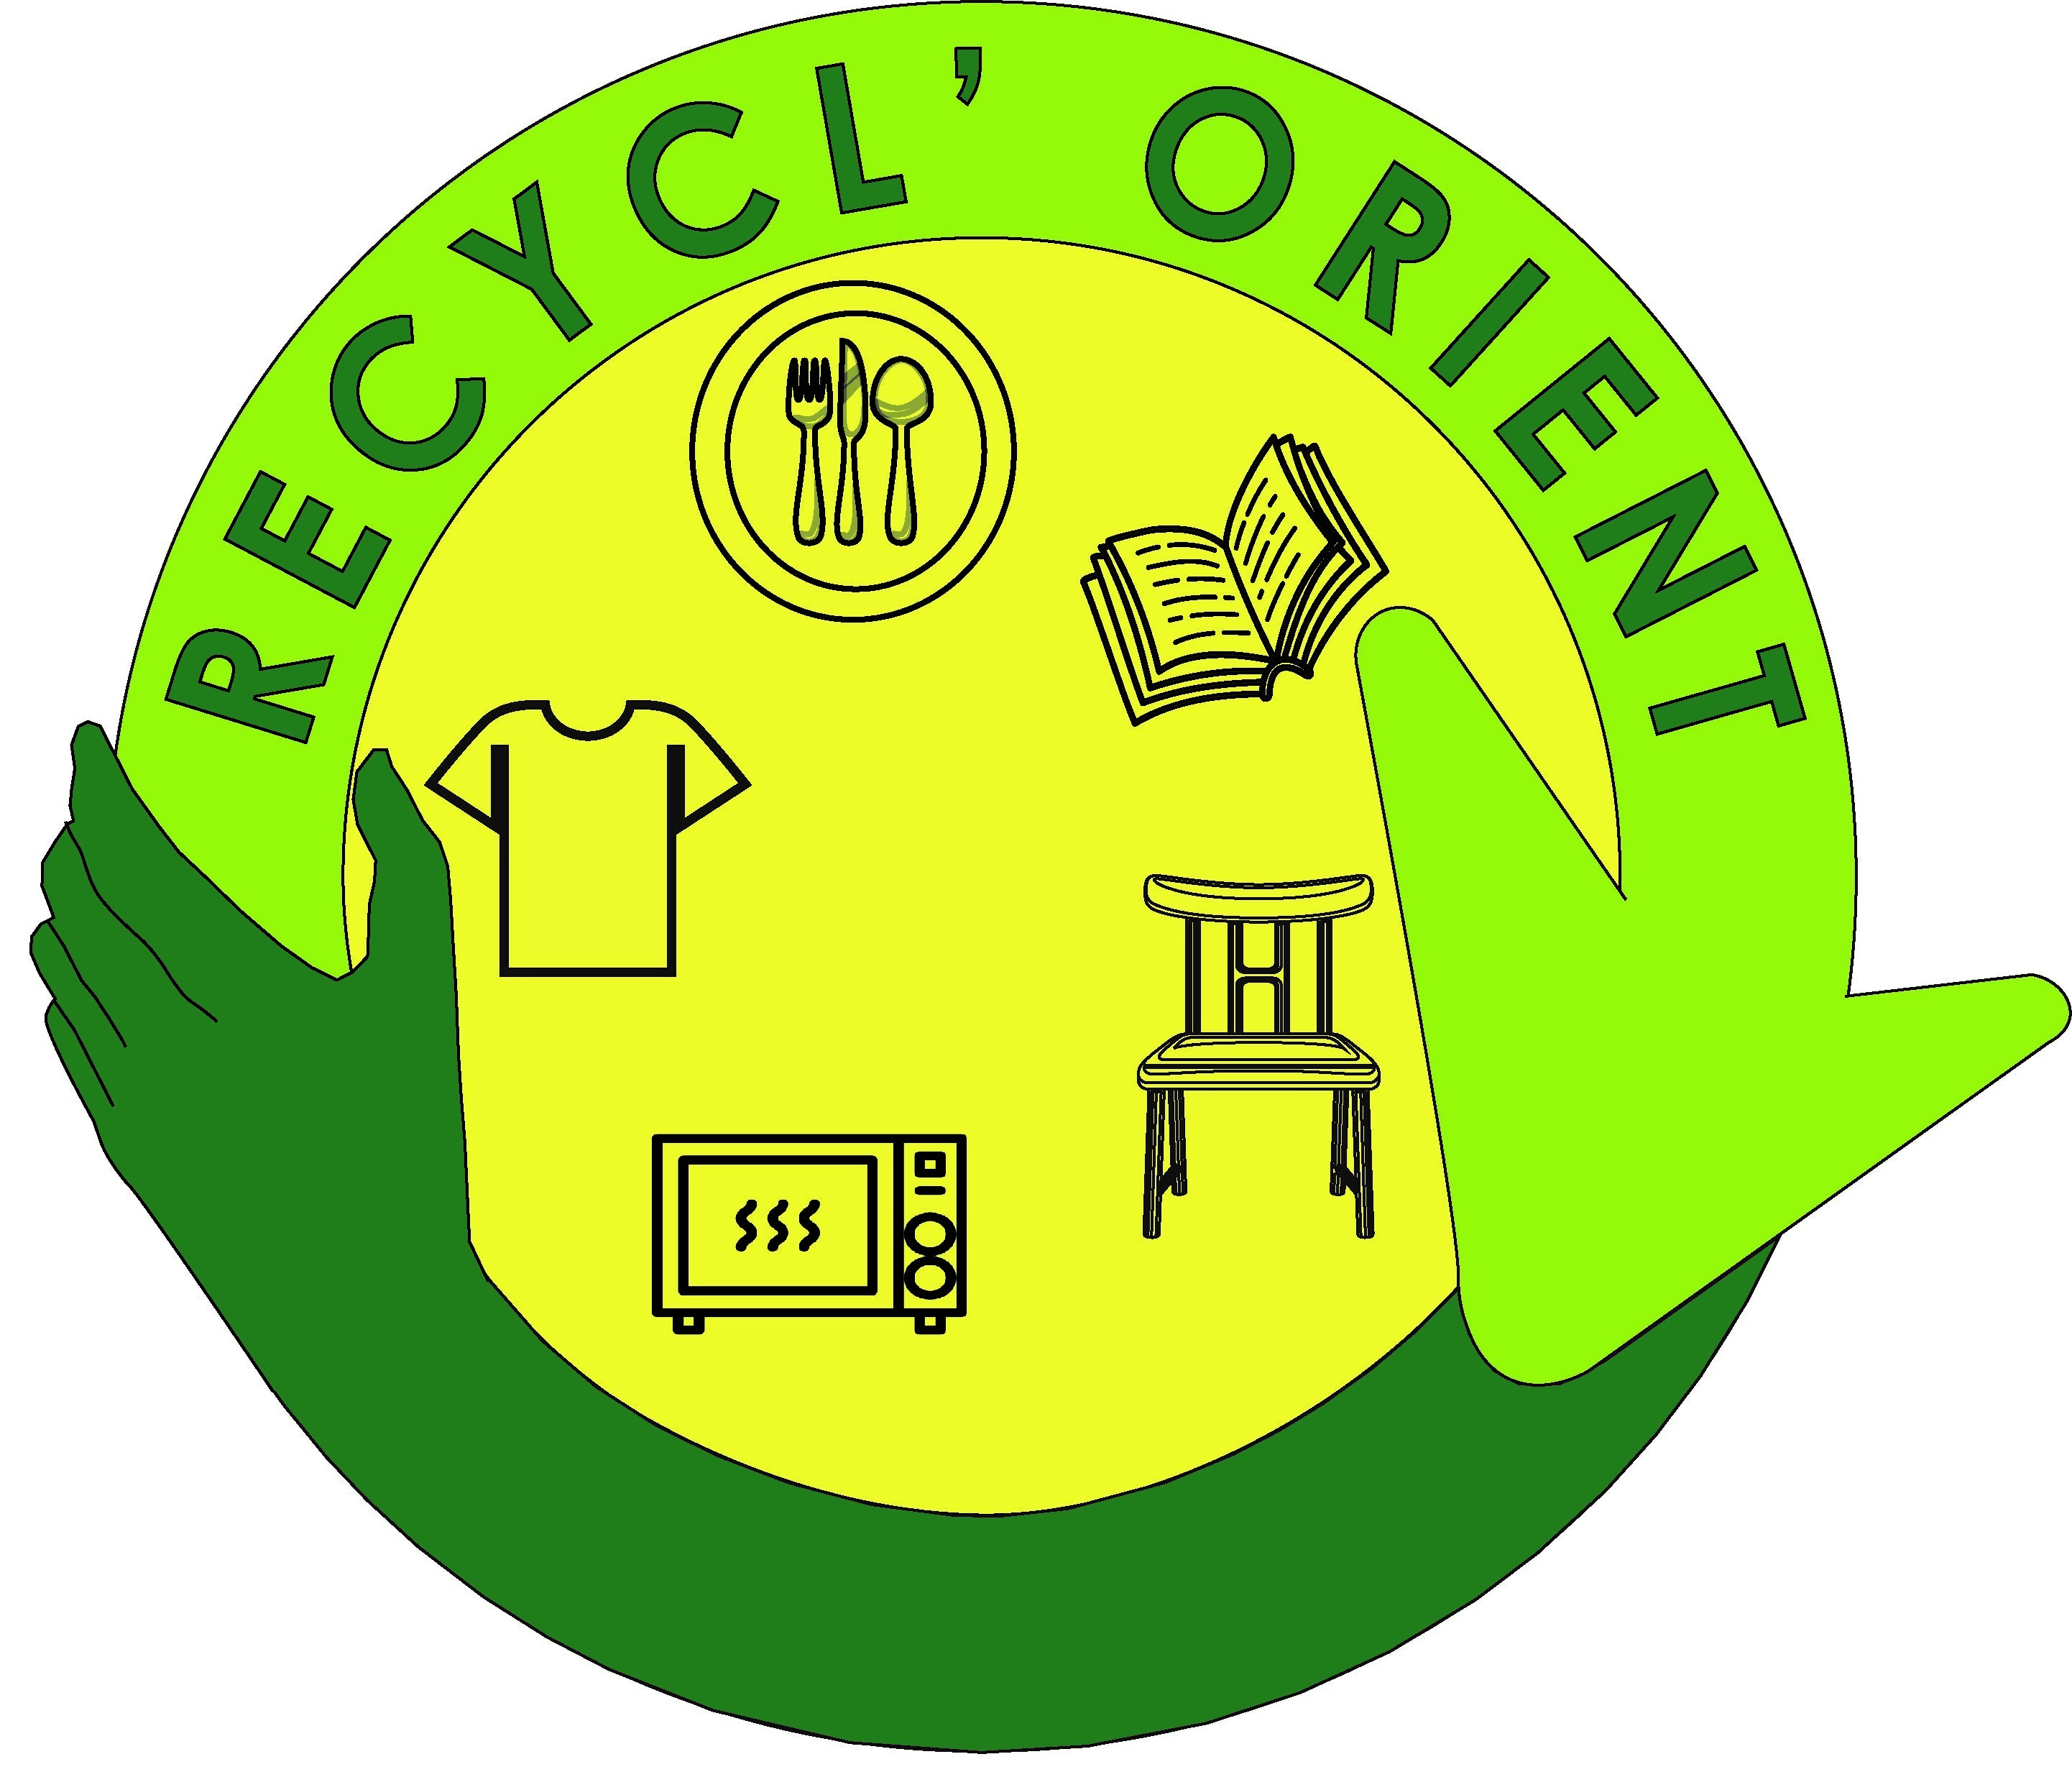 logo recyclerie